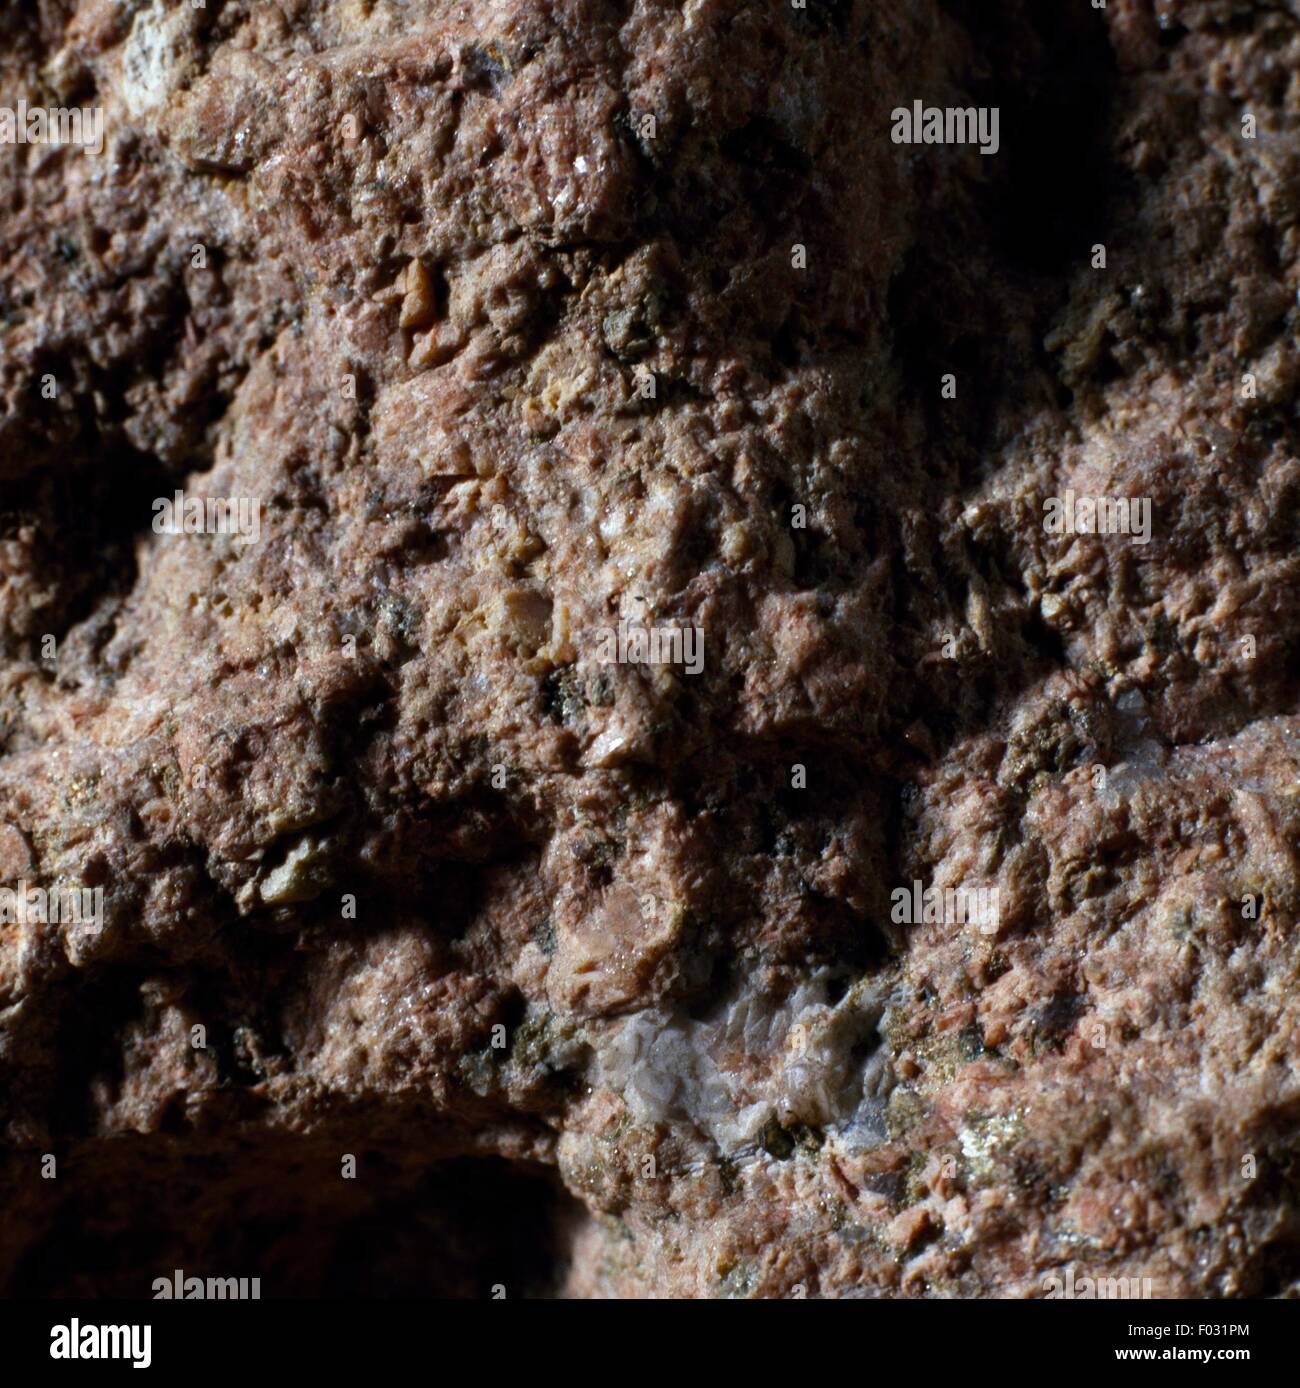 Du granophyre, texture fine de roche ignée, de Valganna, Lombardie, Italie. Banque D'Images